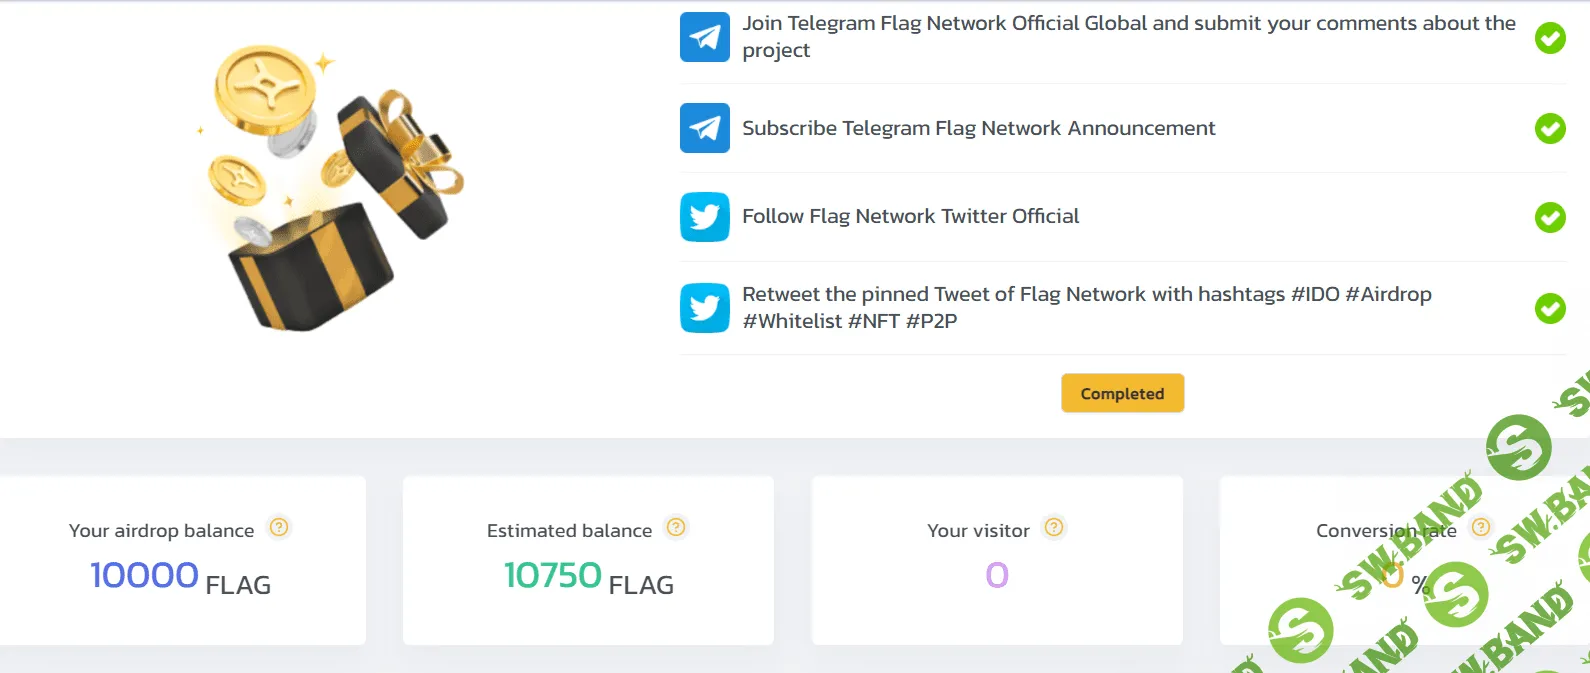 Аэрдроп Flag Network. 1200$  (можно без рефов)